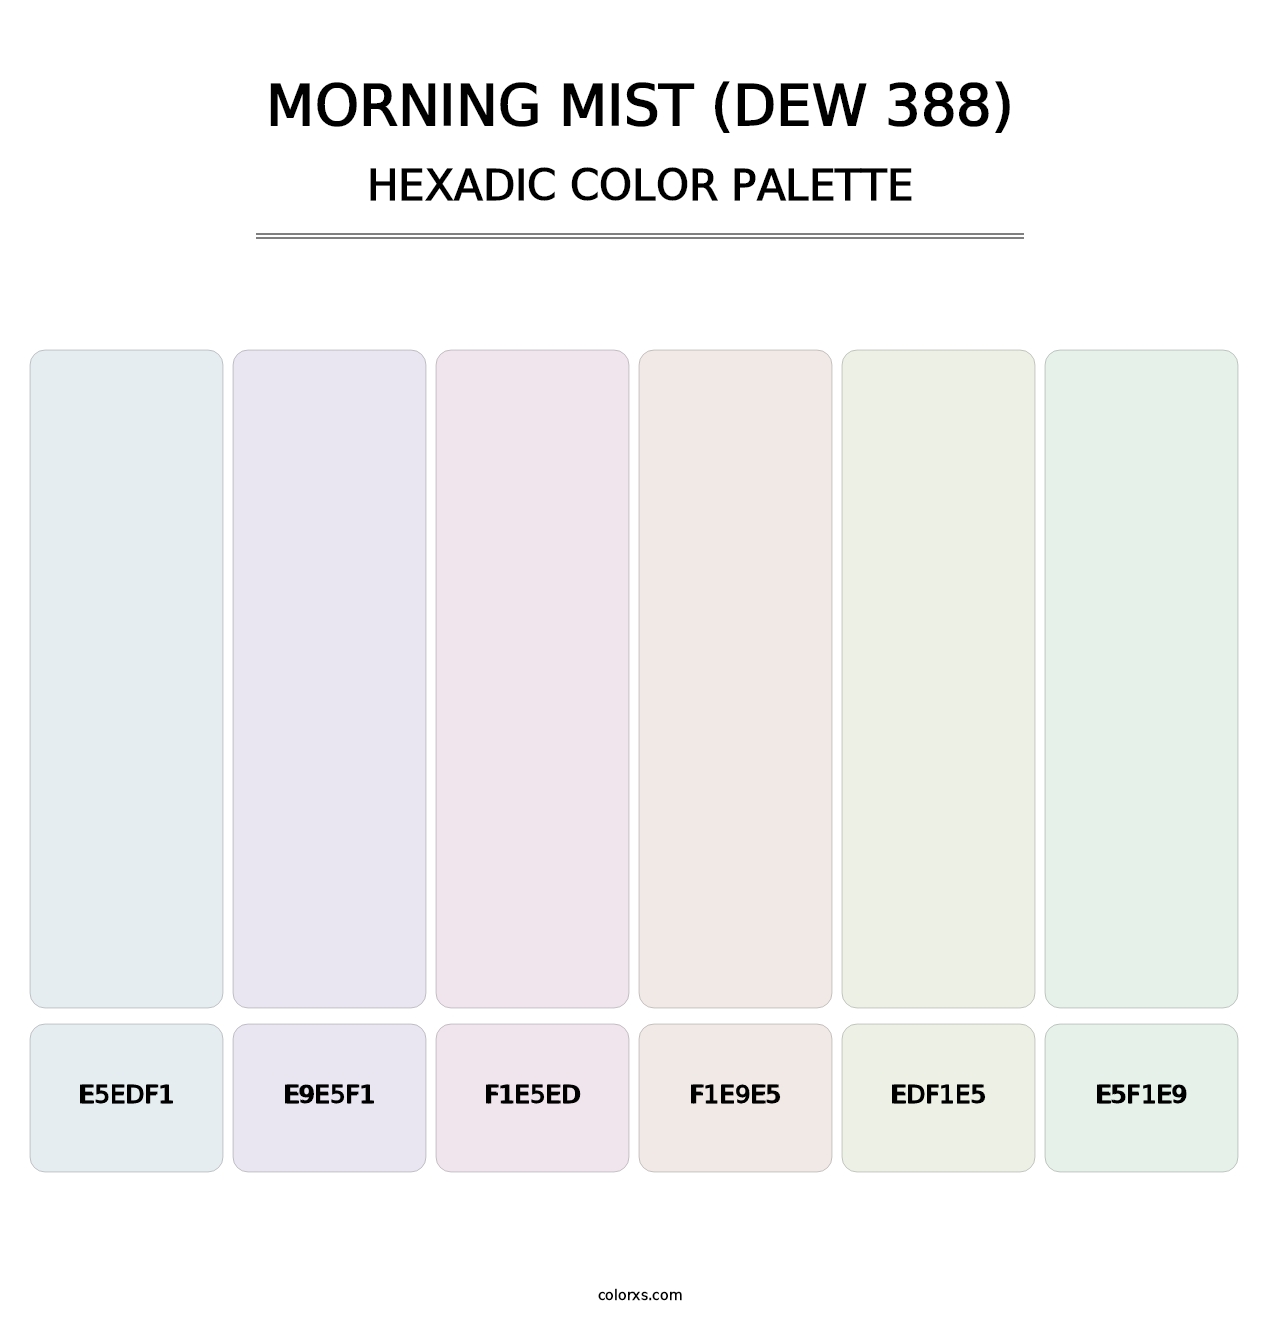 Morning Mist (DEW 388) - Hexadic Color Palette